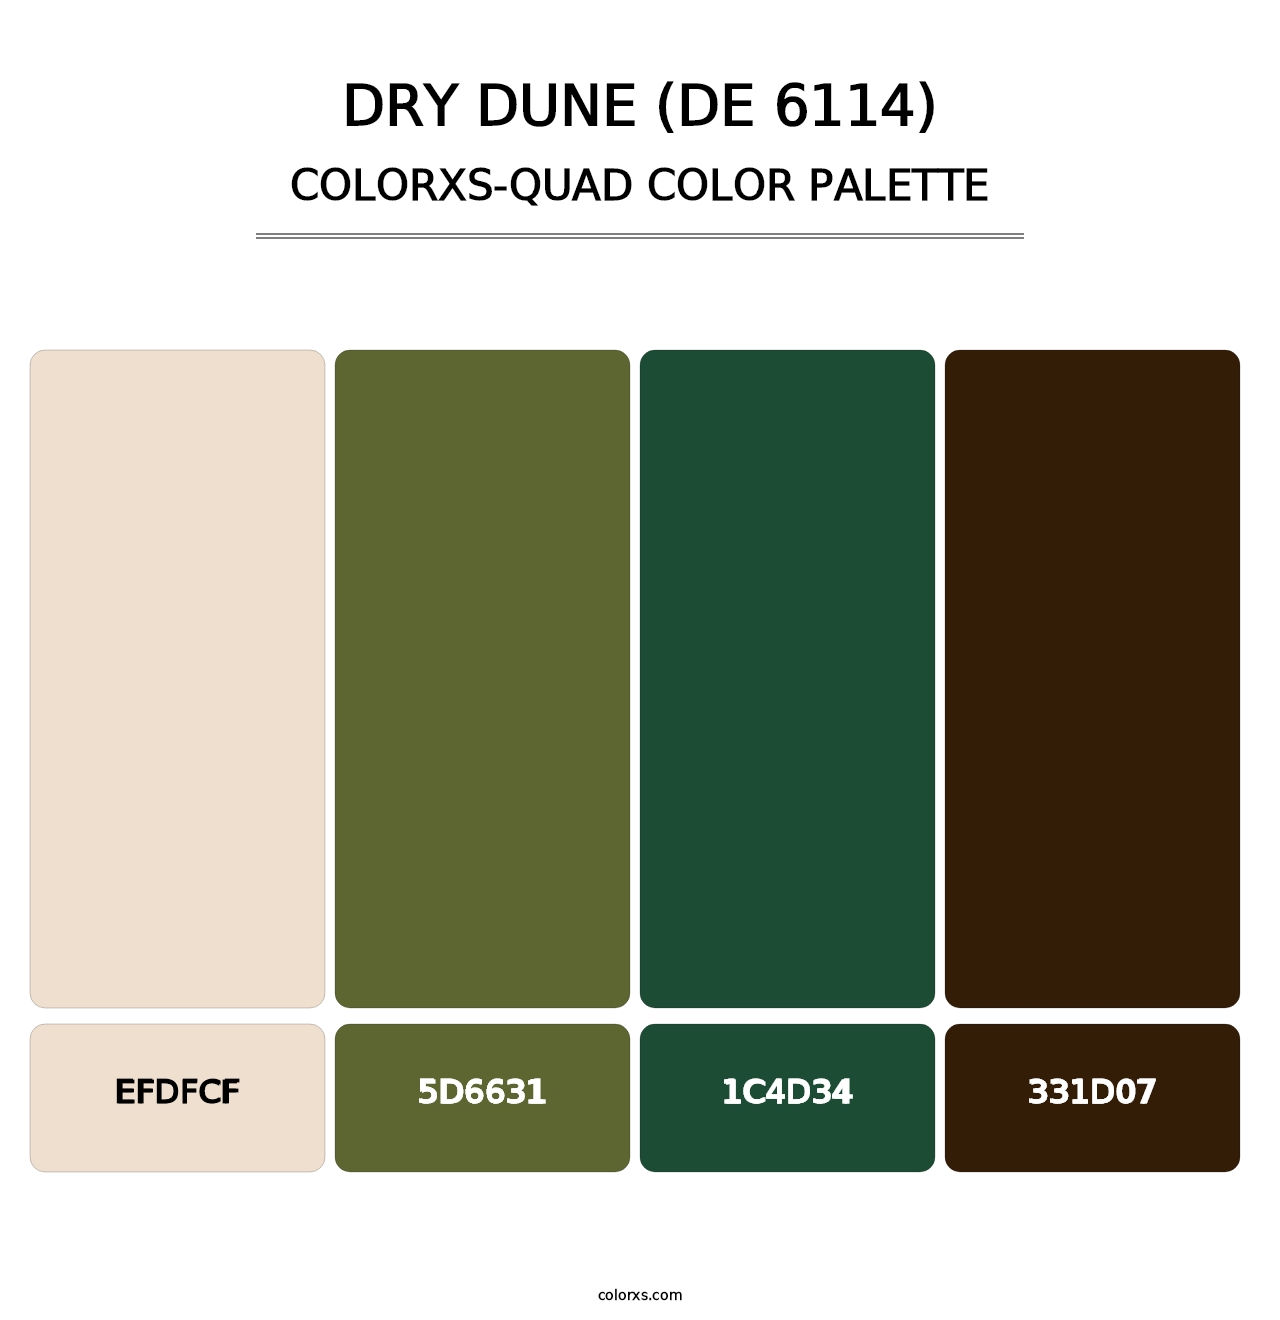 Dry Dune (DE 6114) - Colorxs Quad Palette